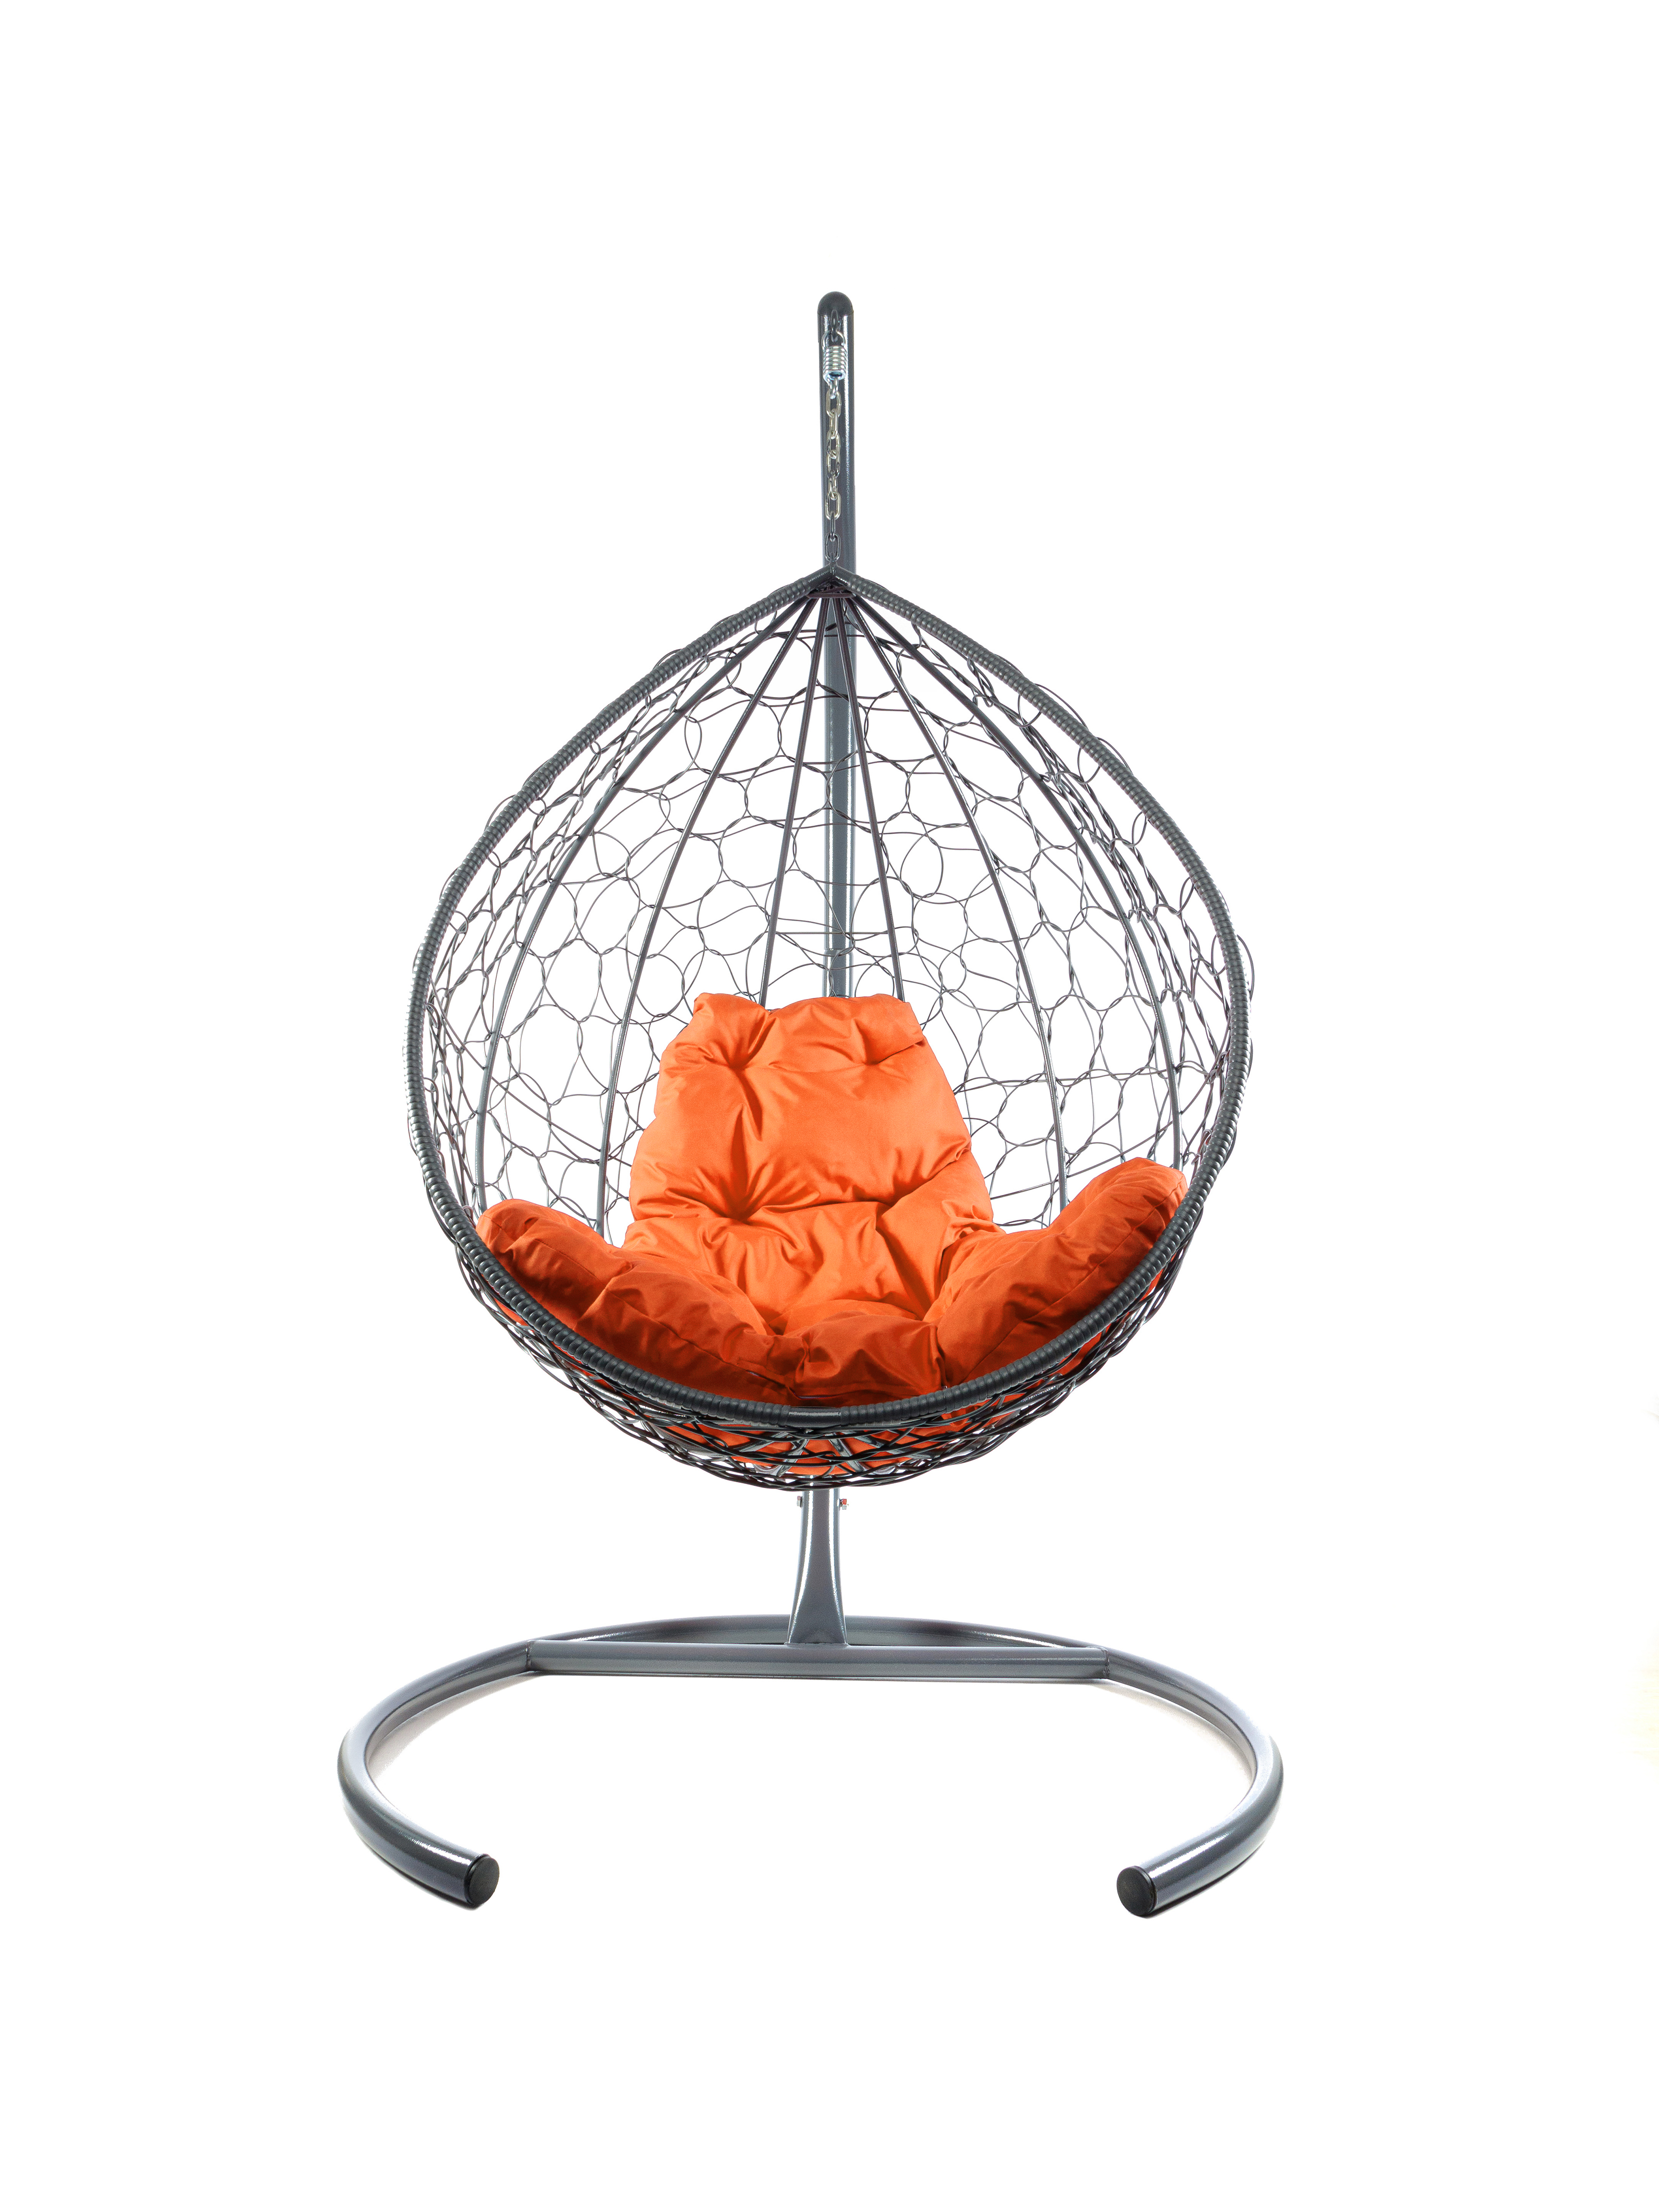 Подвесное кресло серое M-Group Капля с ротангом 11020307 оранжевая подушка